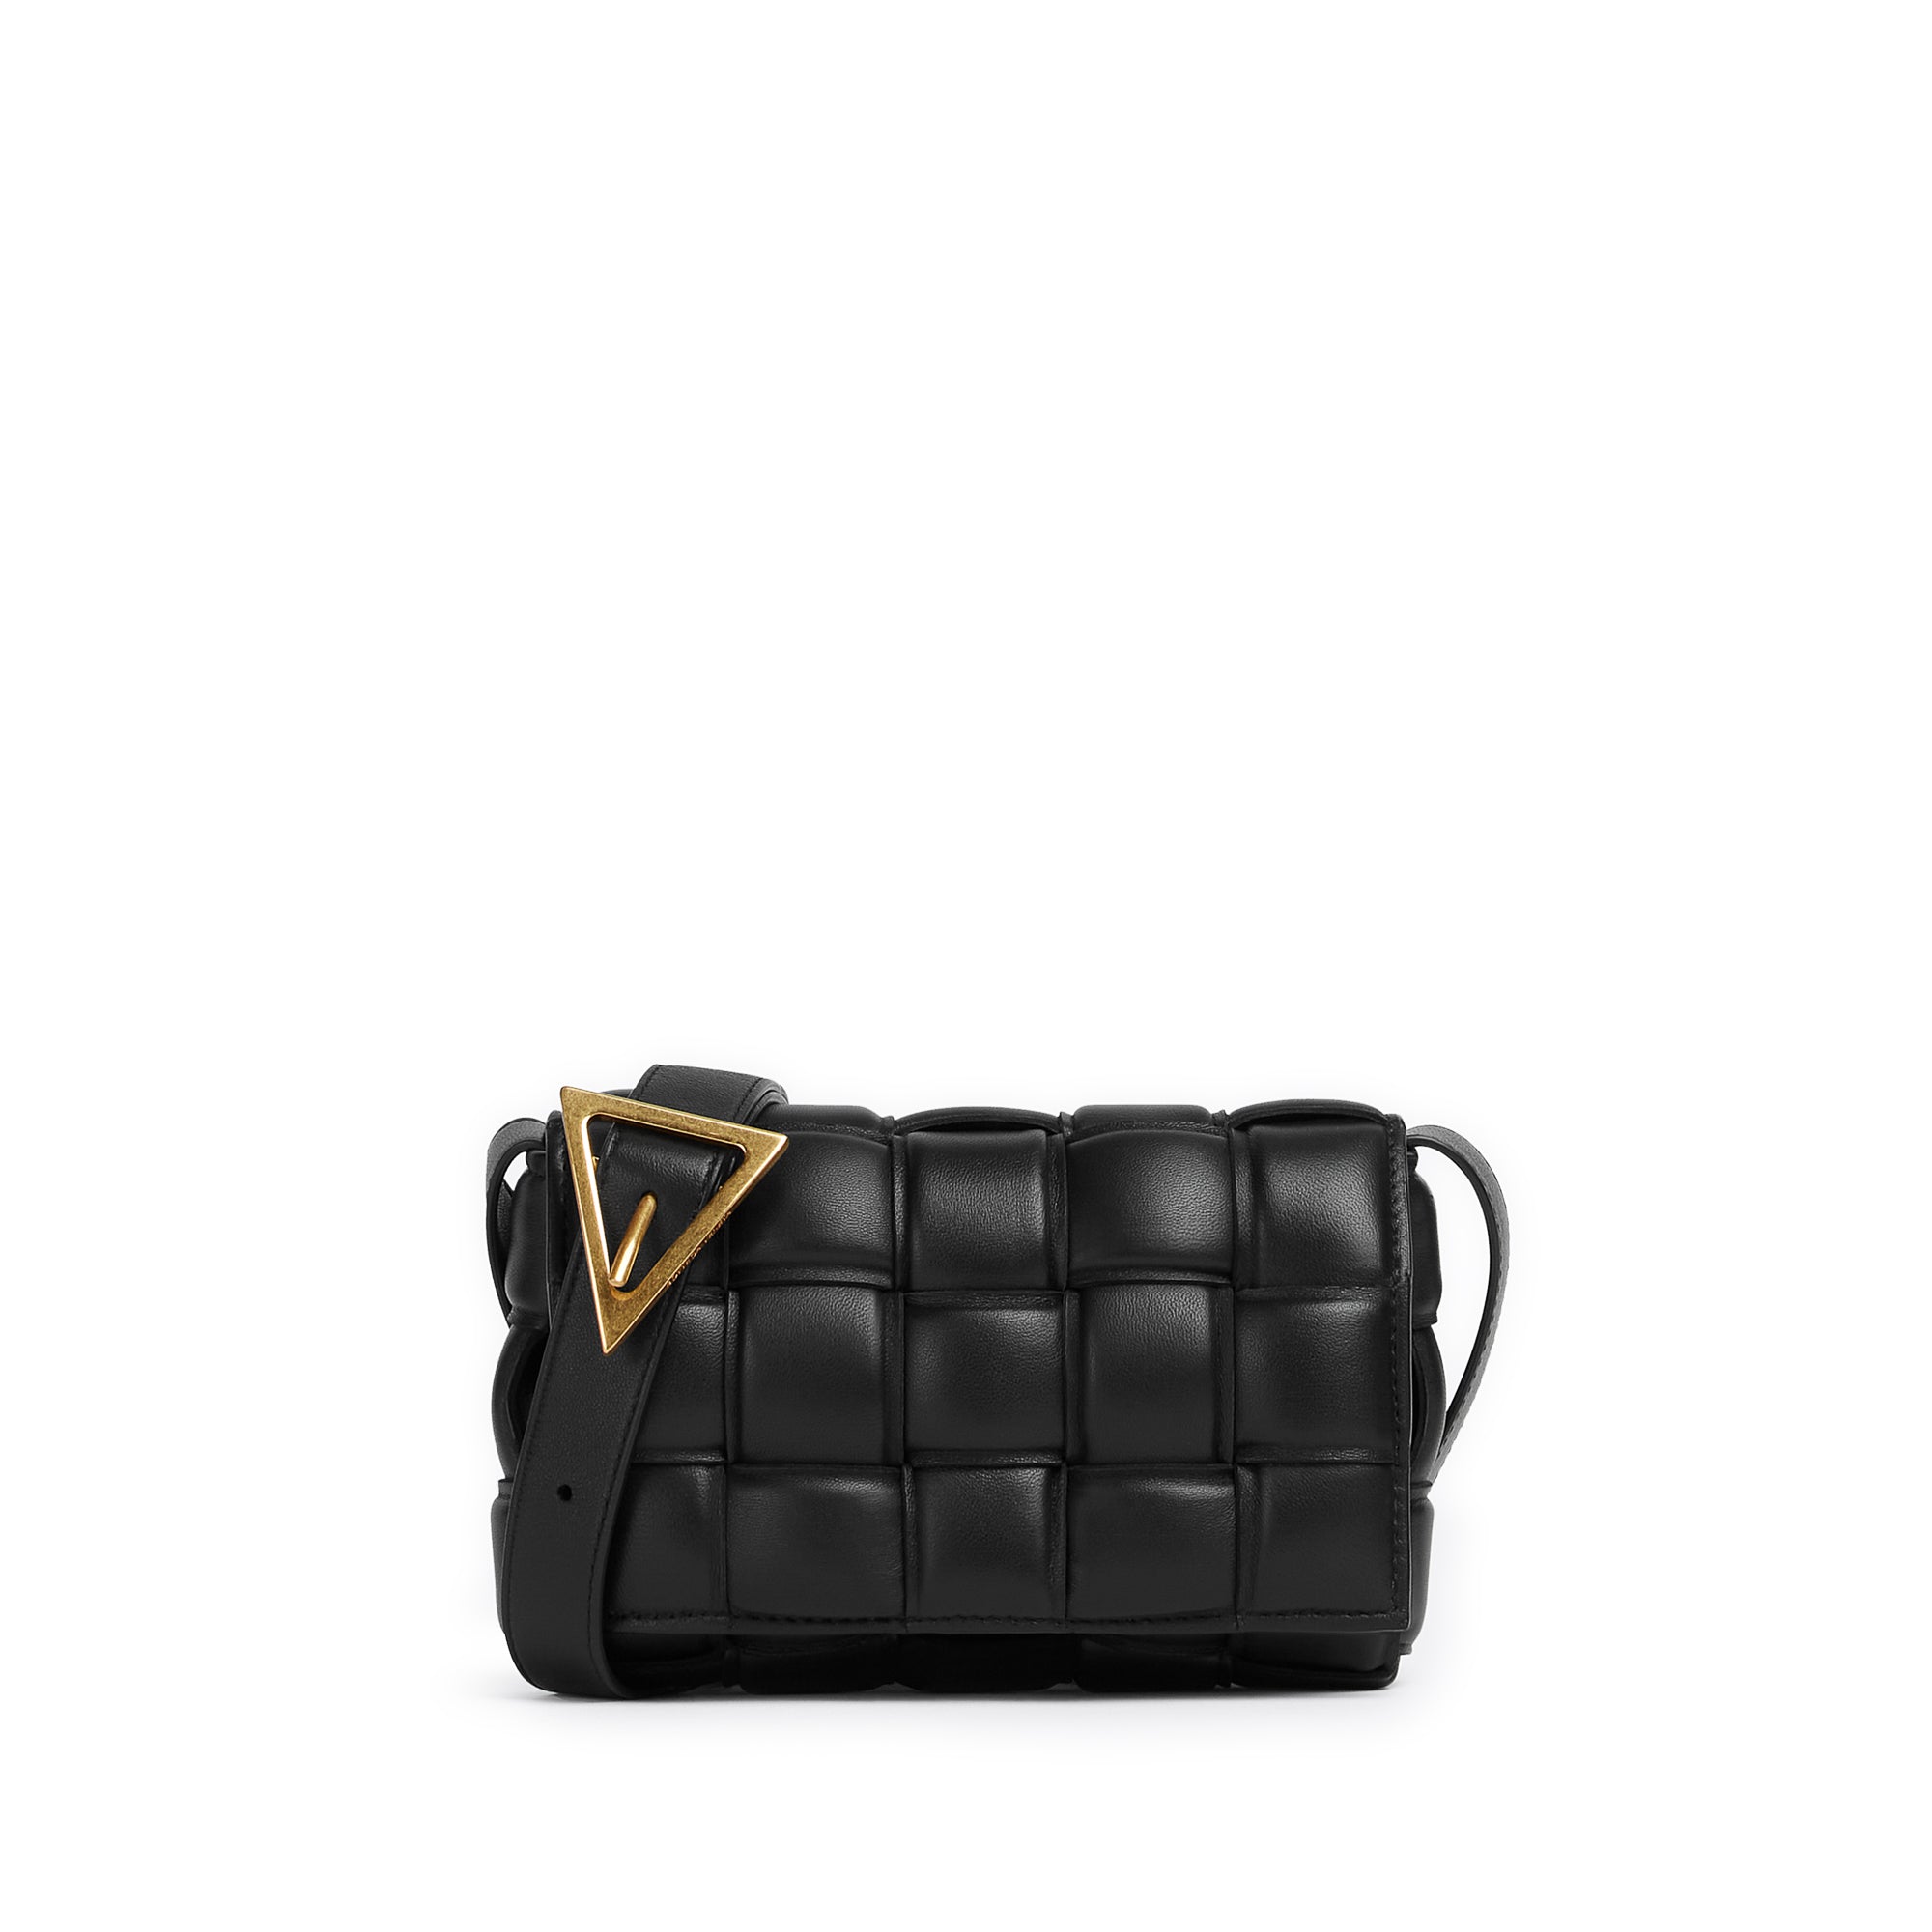 Bottega Veneta Small Intreccio Leather Camera Bag Black/Gold